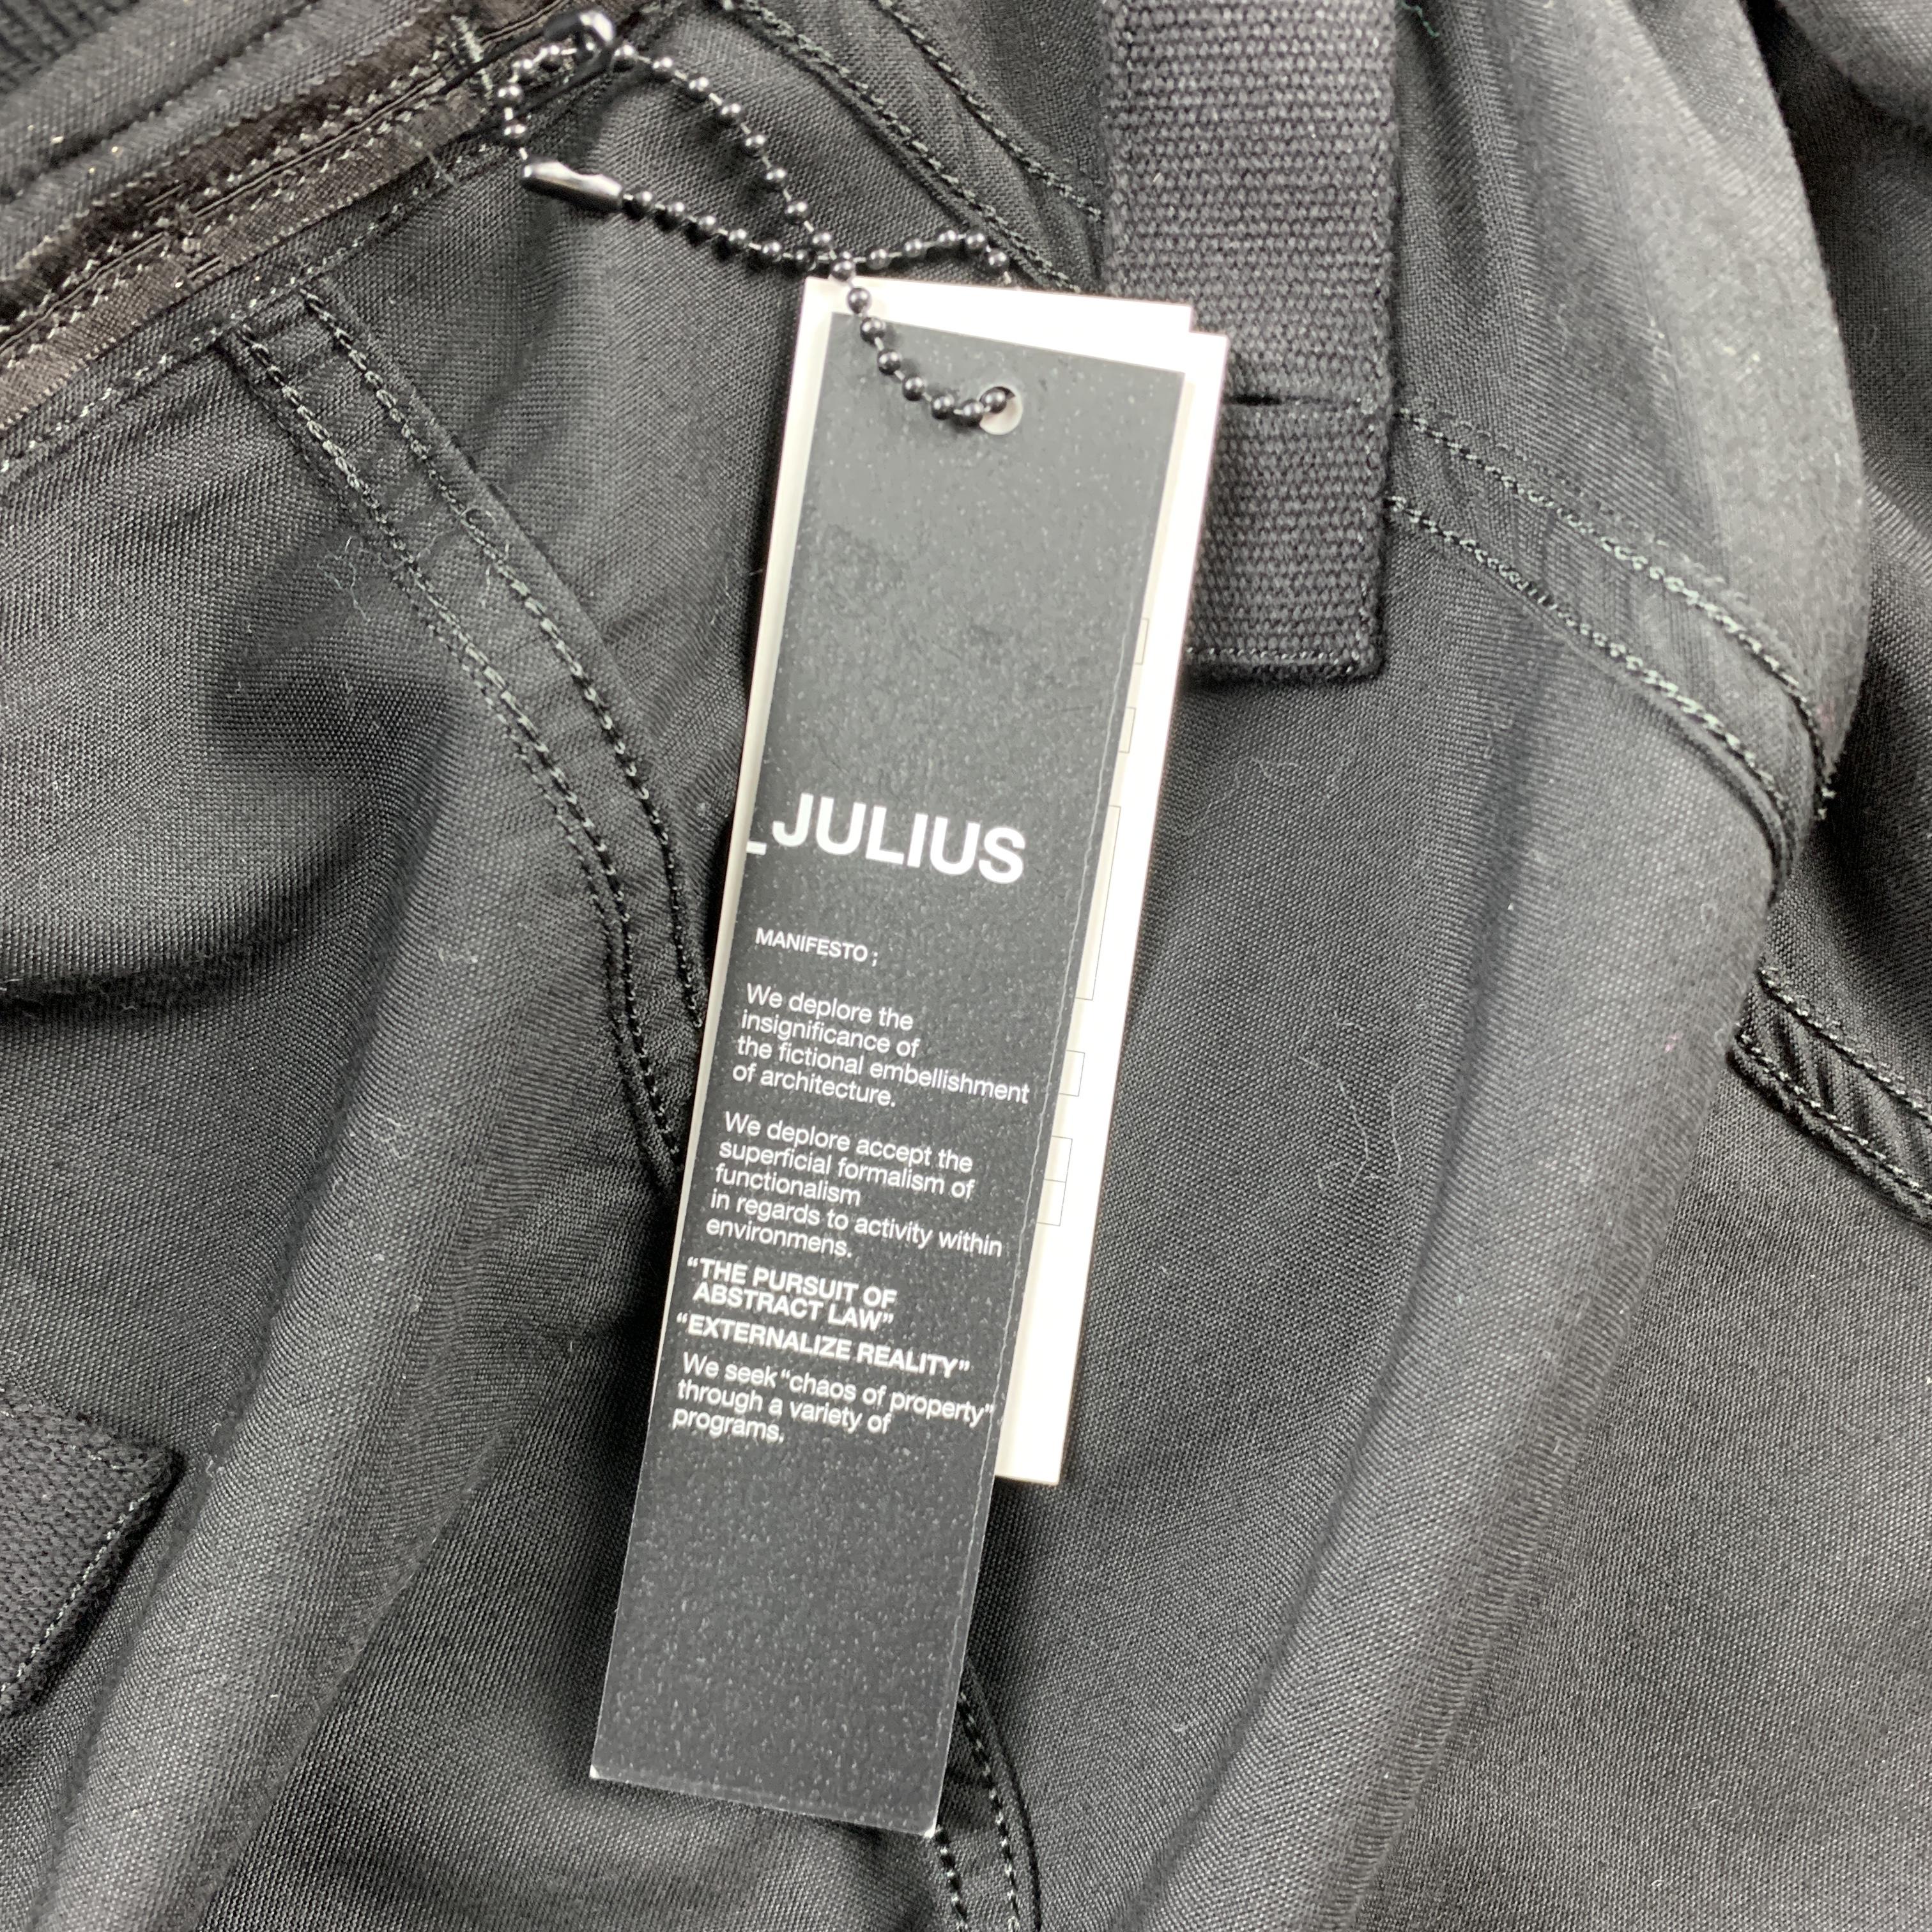 JULIUS_7 S/S 18 Size M Black Cotton / Nylon Zip Up A81 Harness Jacket 4